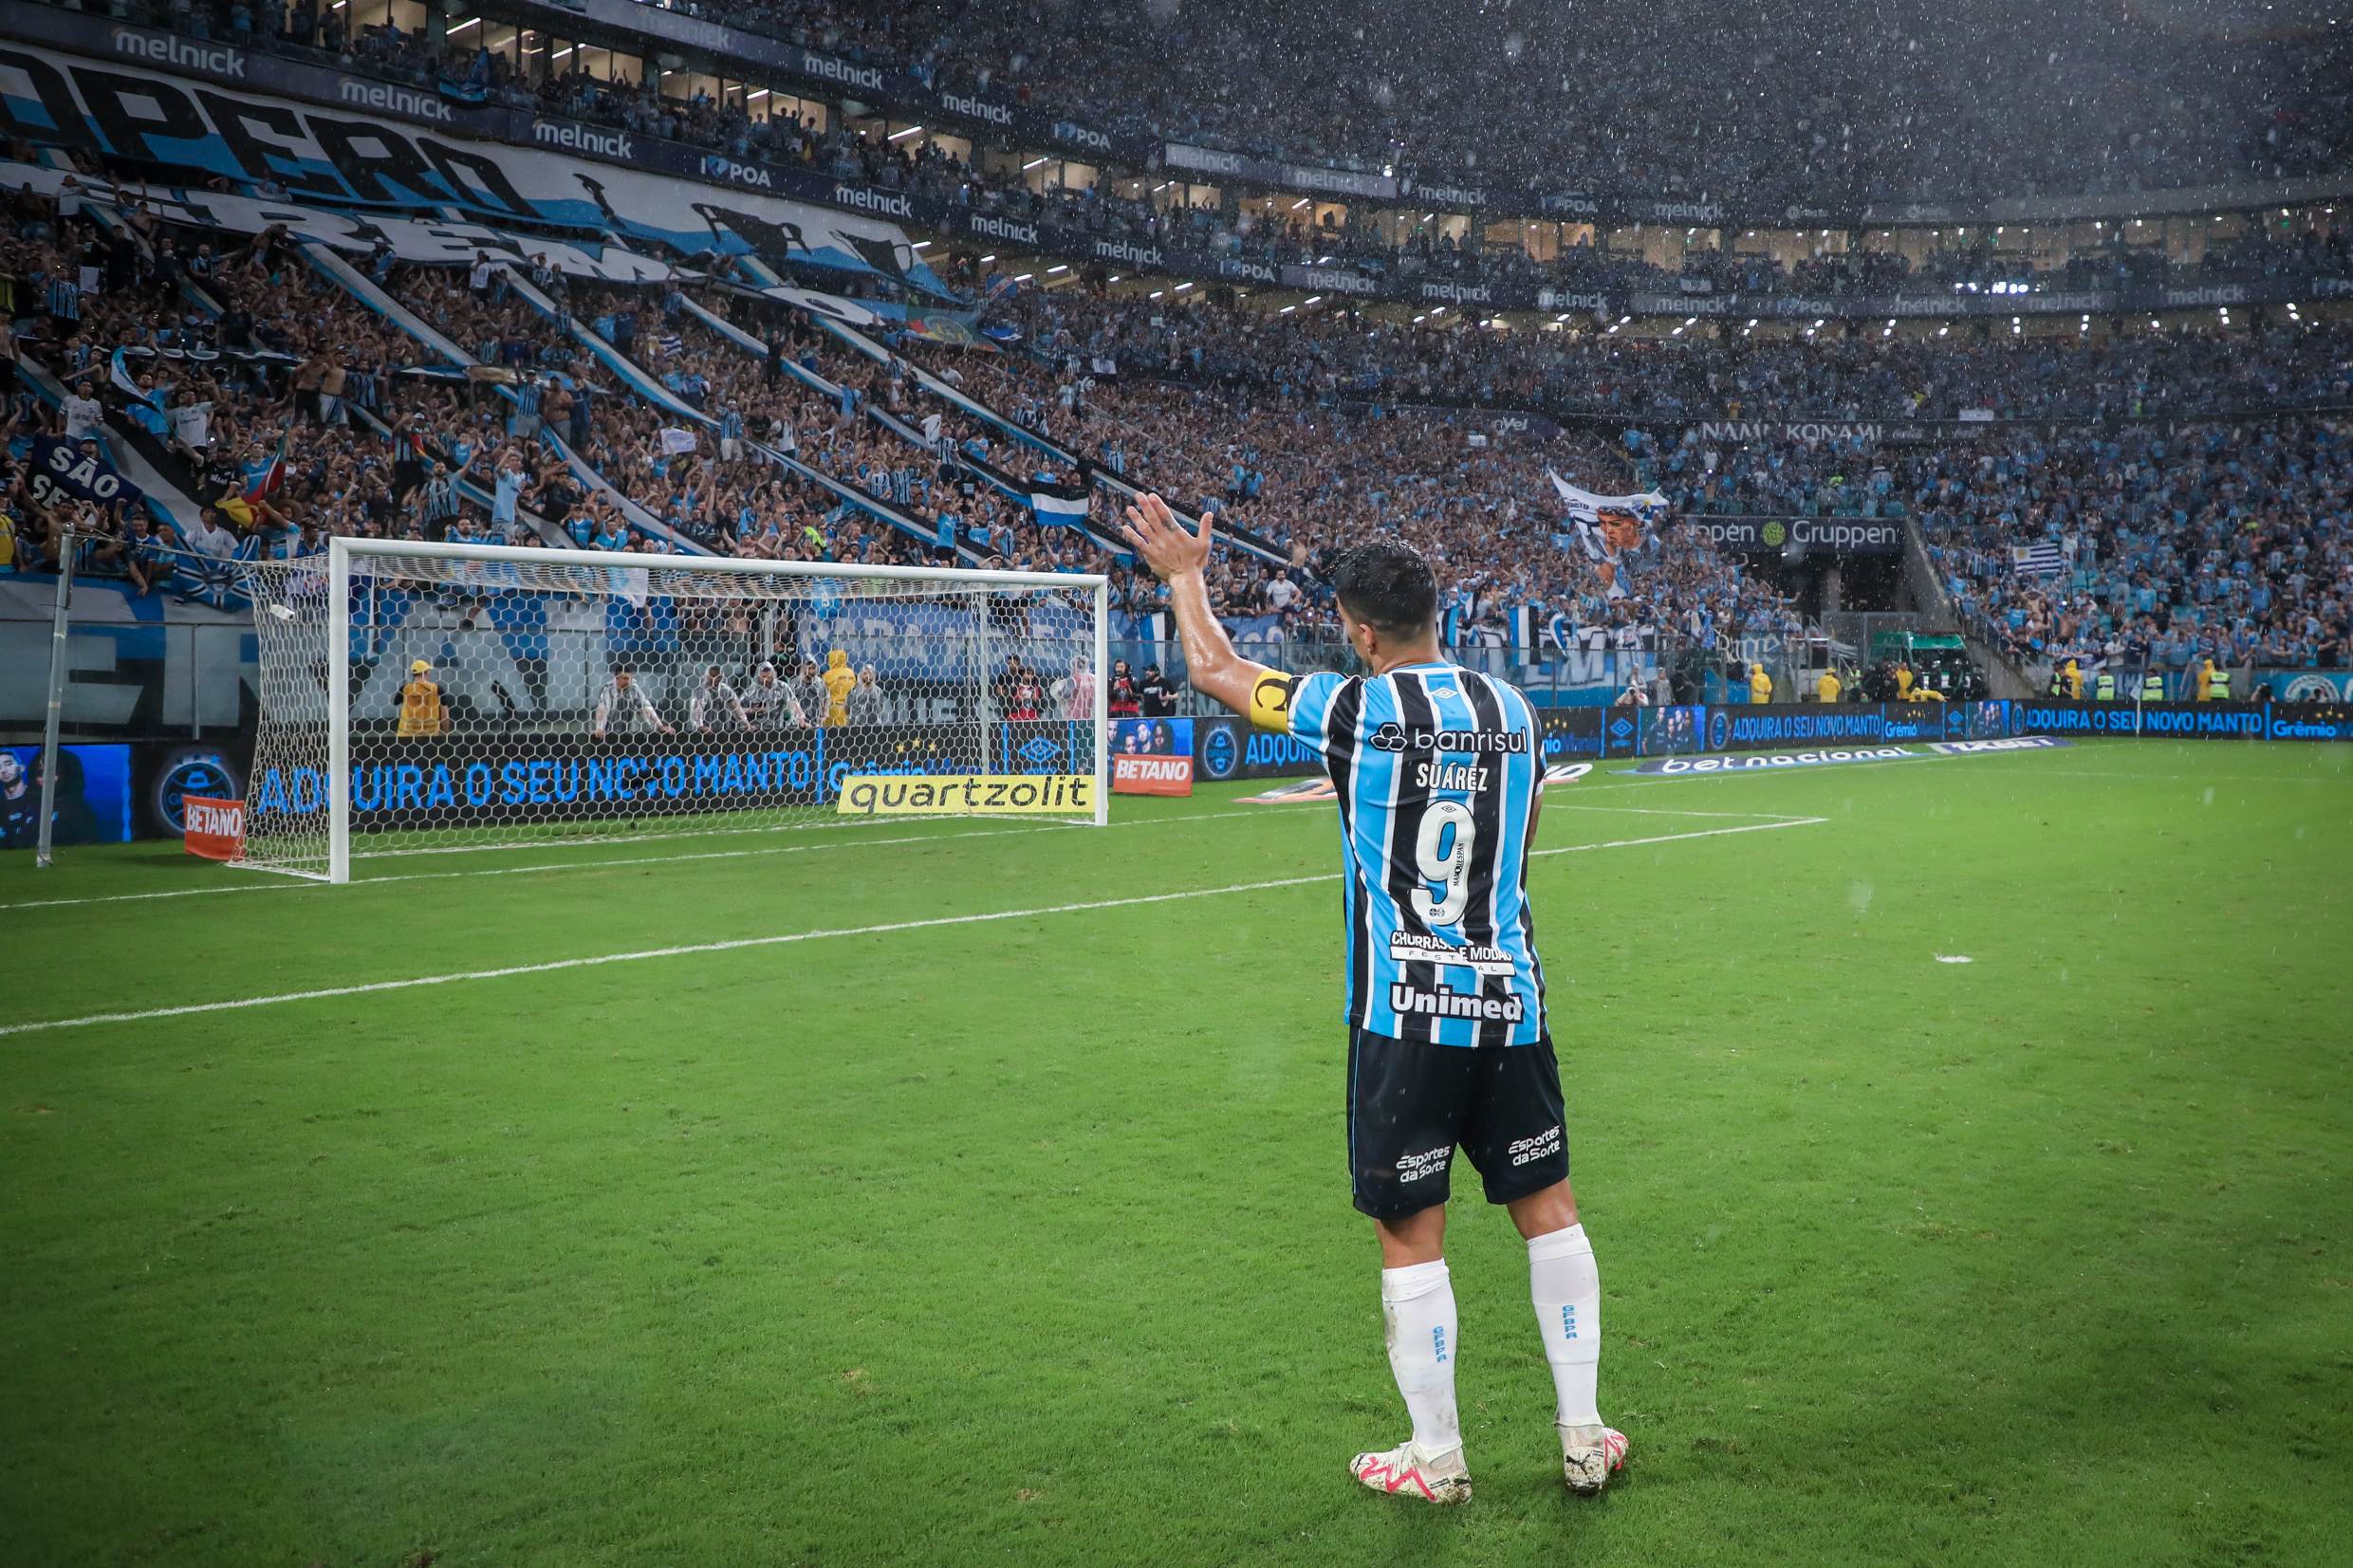 Suárez sendo homenageado pela torcida do Grêmio - (Foto: Lucas Uebel/Grêmio)